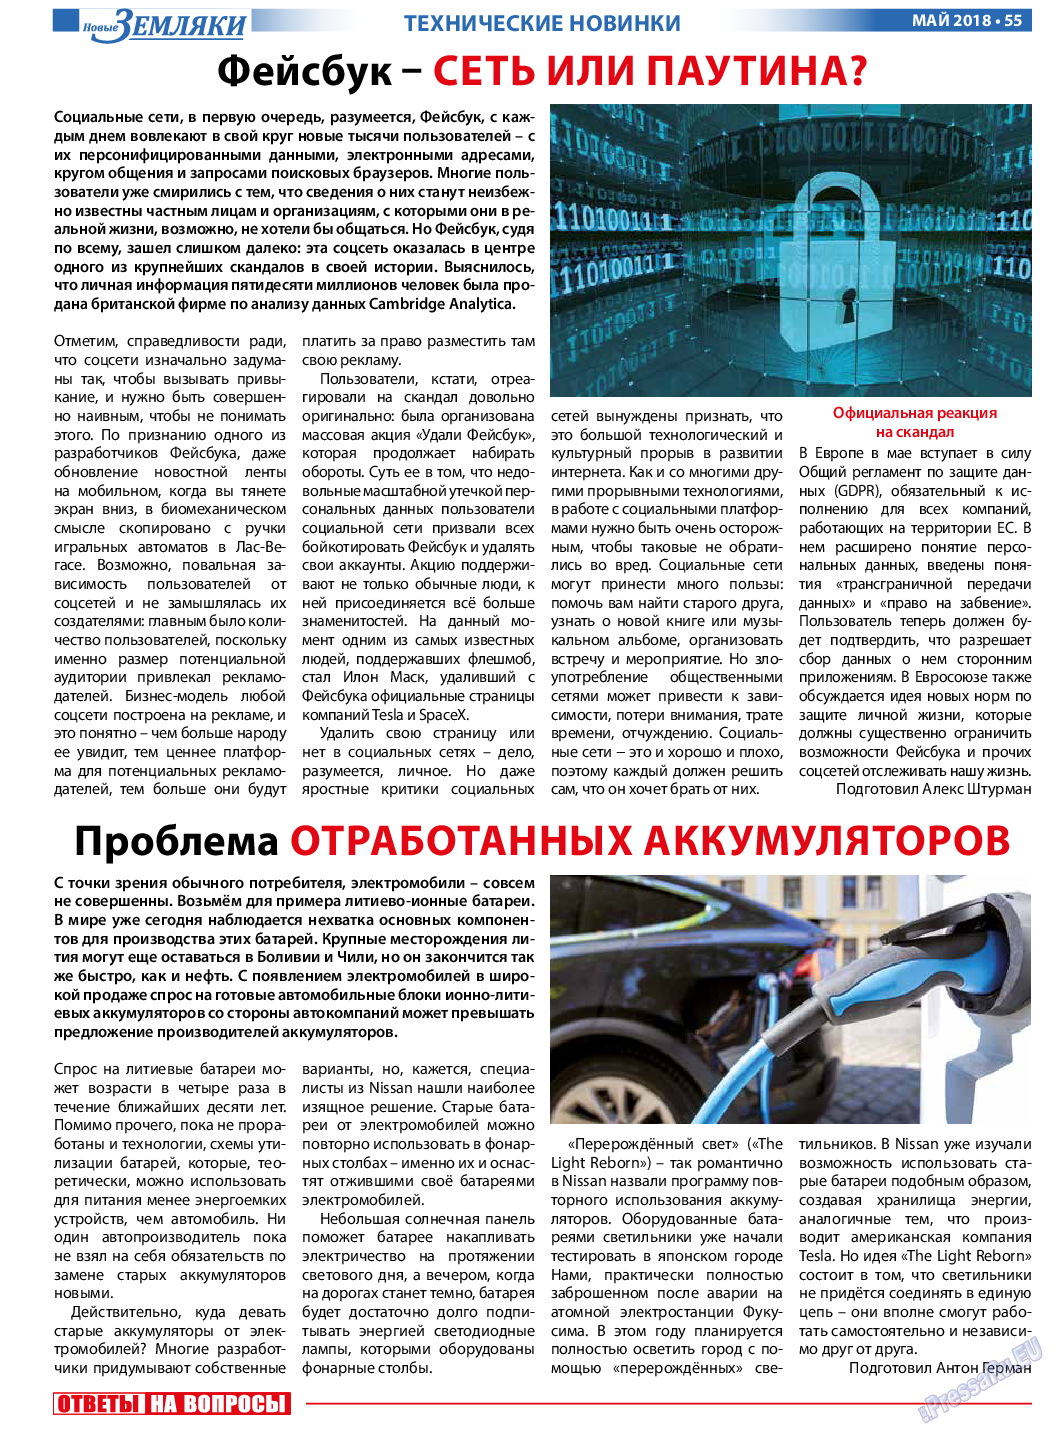 Новые Земляки (газета). 2018 год, номер 5, стр. 55